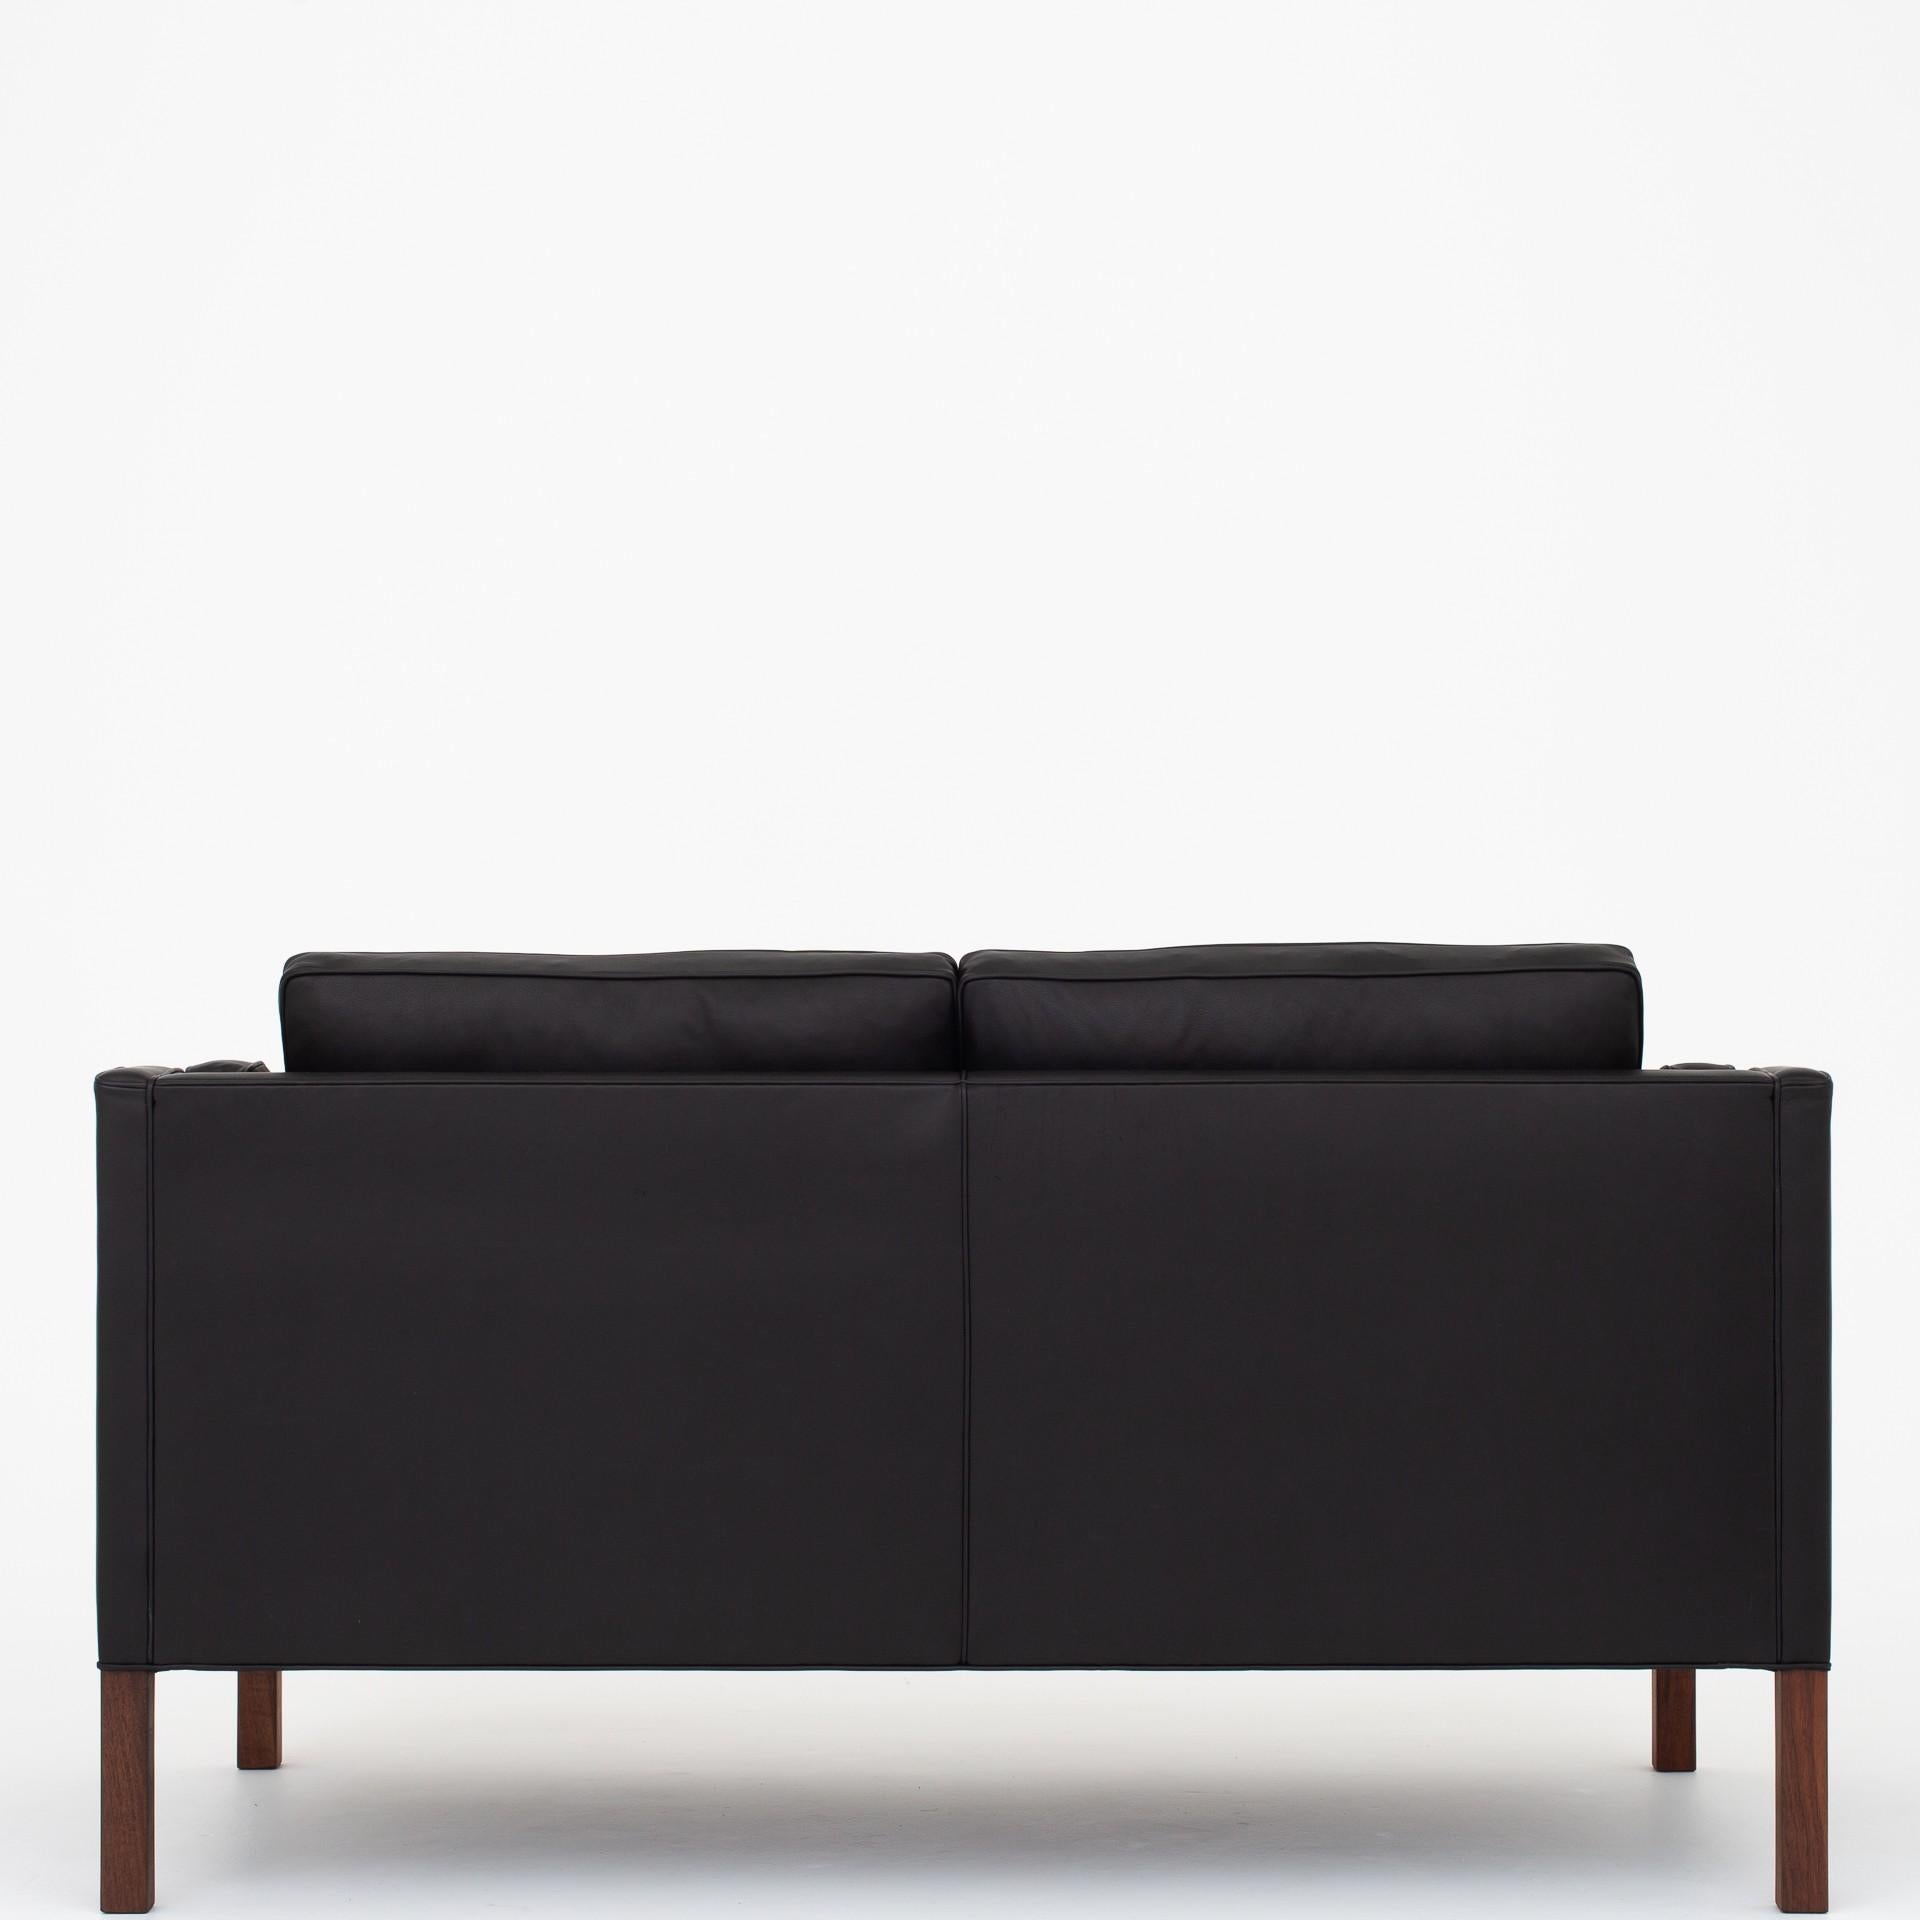 BM 2212 - Neu gepolstertes 2-Sitzer-Sofa in Black Pleasure mit Beinen in Nussbaum. Hersteller Fredericia Furniture.